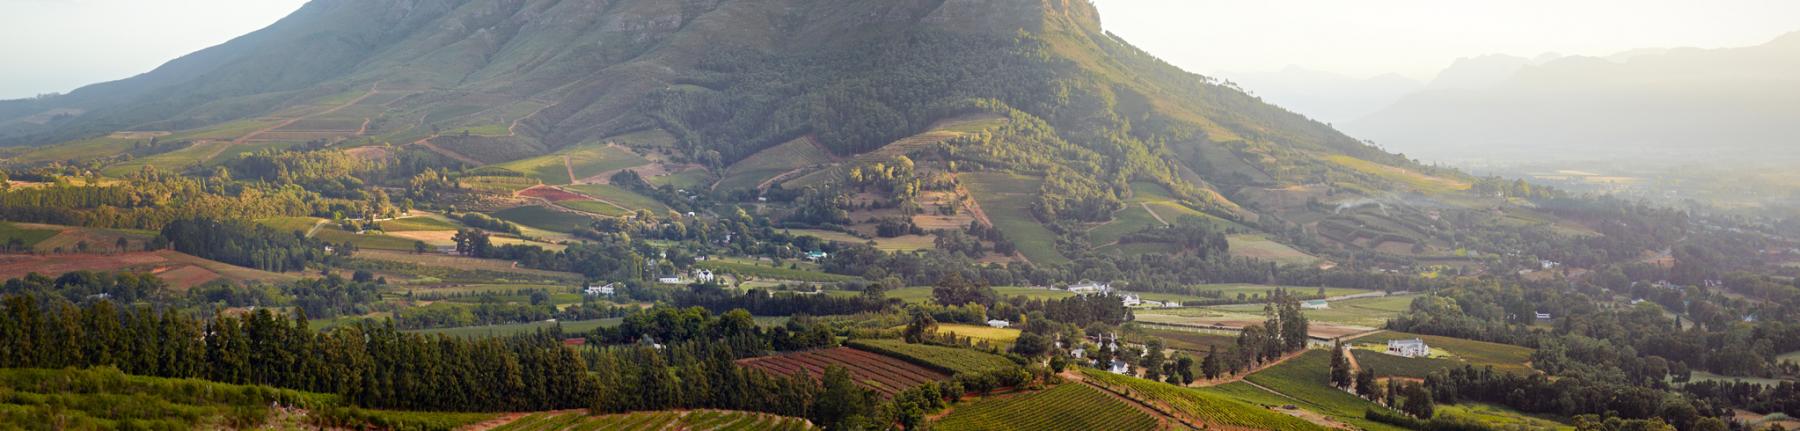 Simonsberg Mountain from Capensis' Fijnbosch vineyards